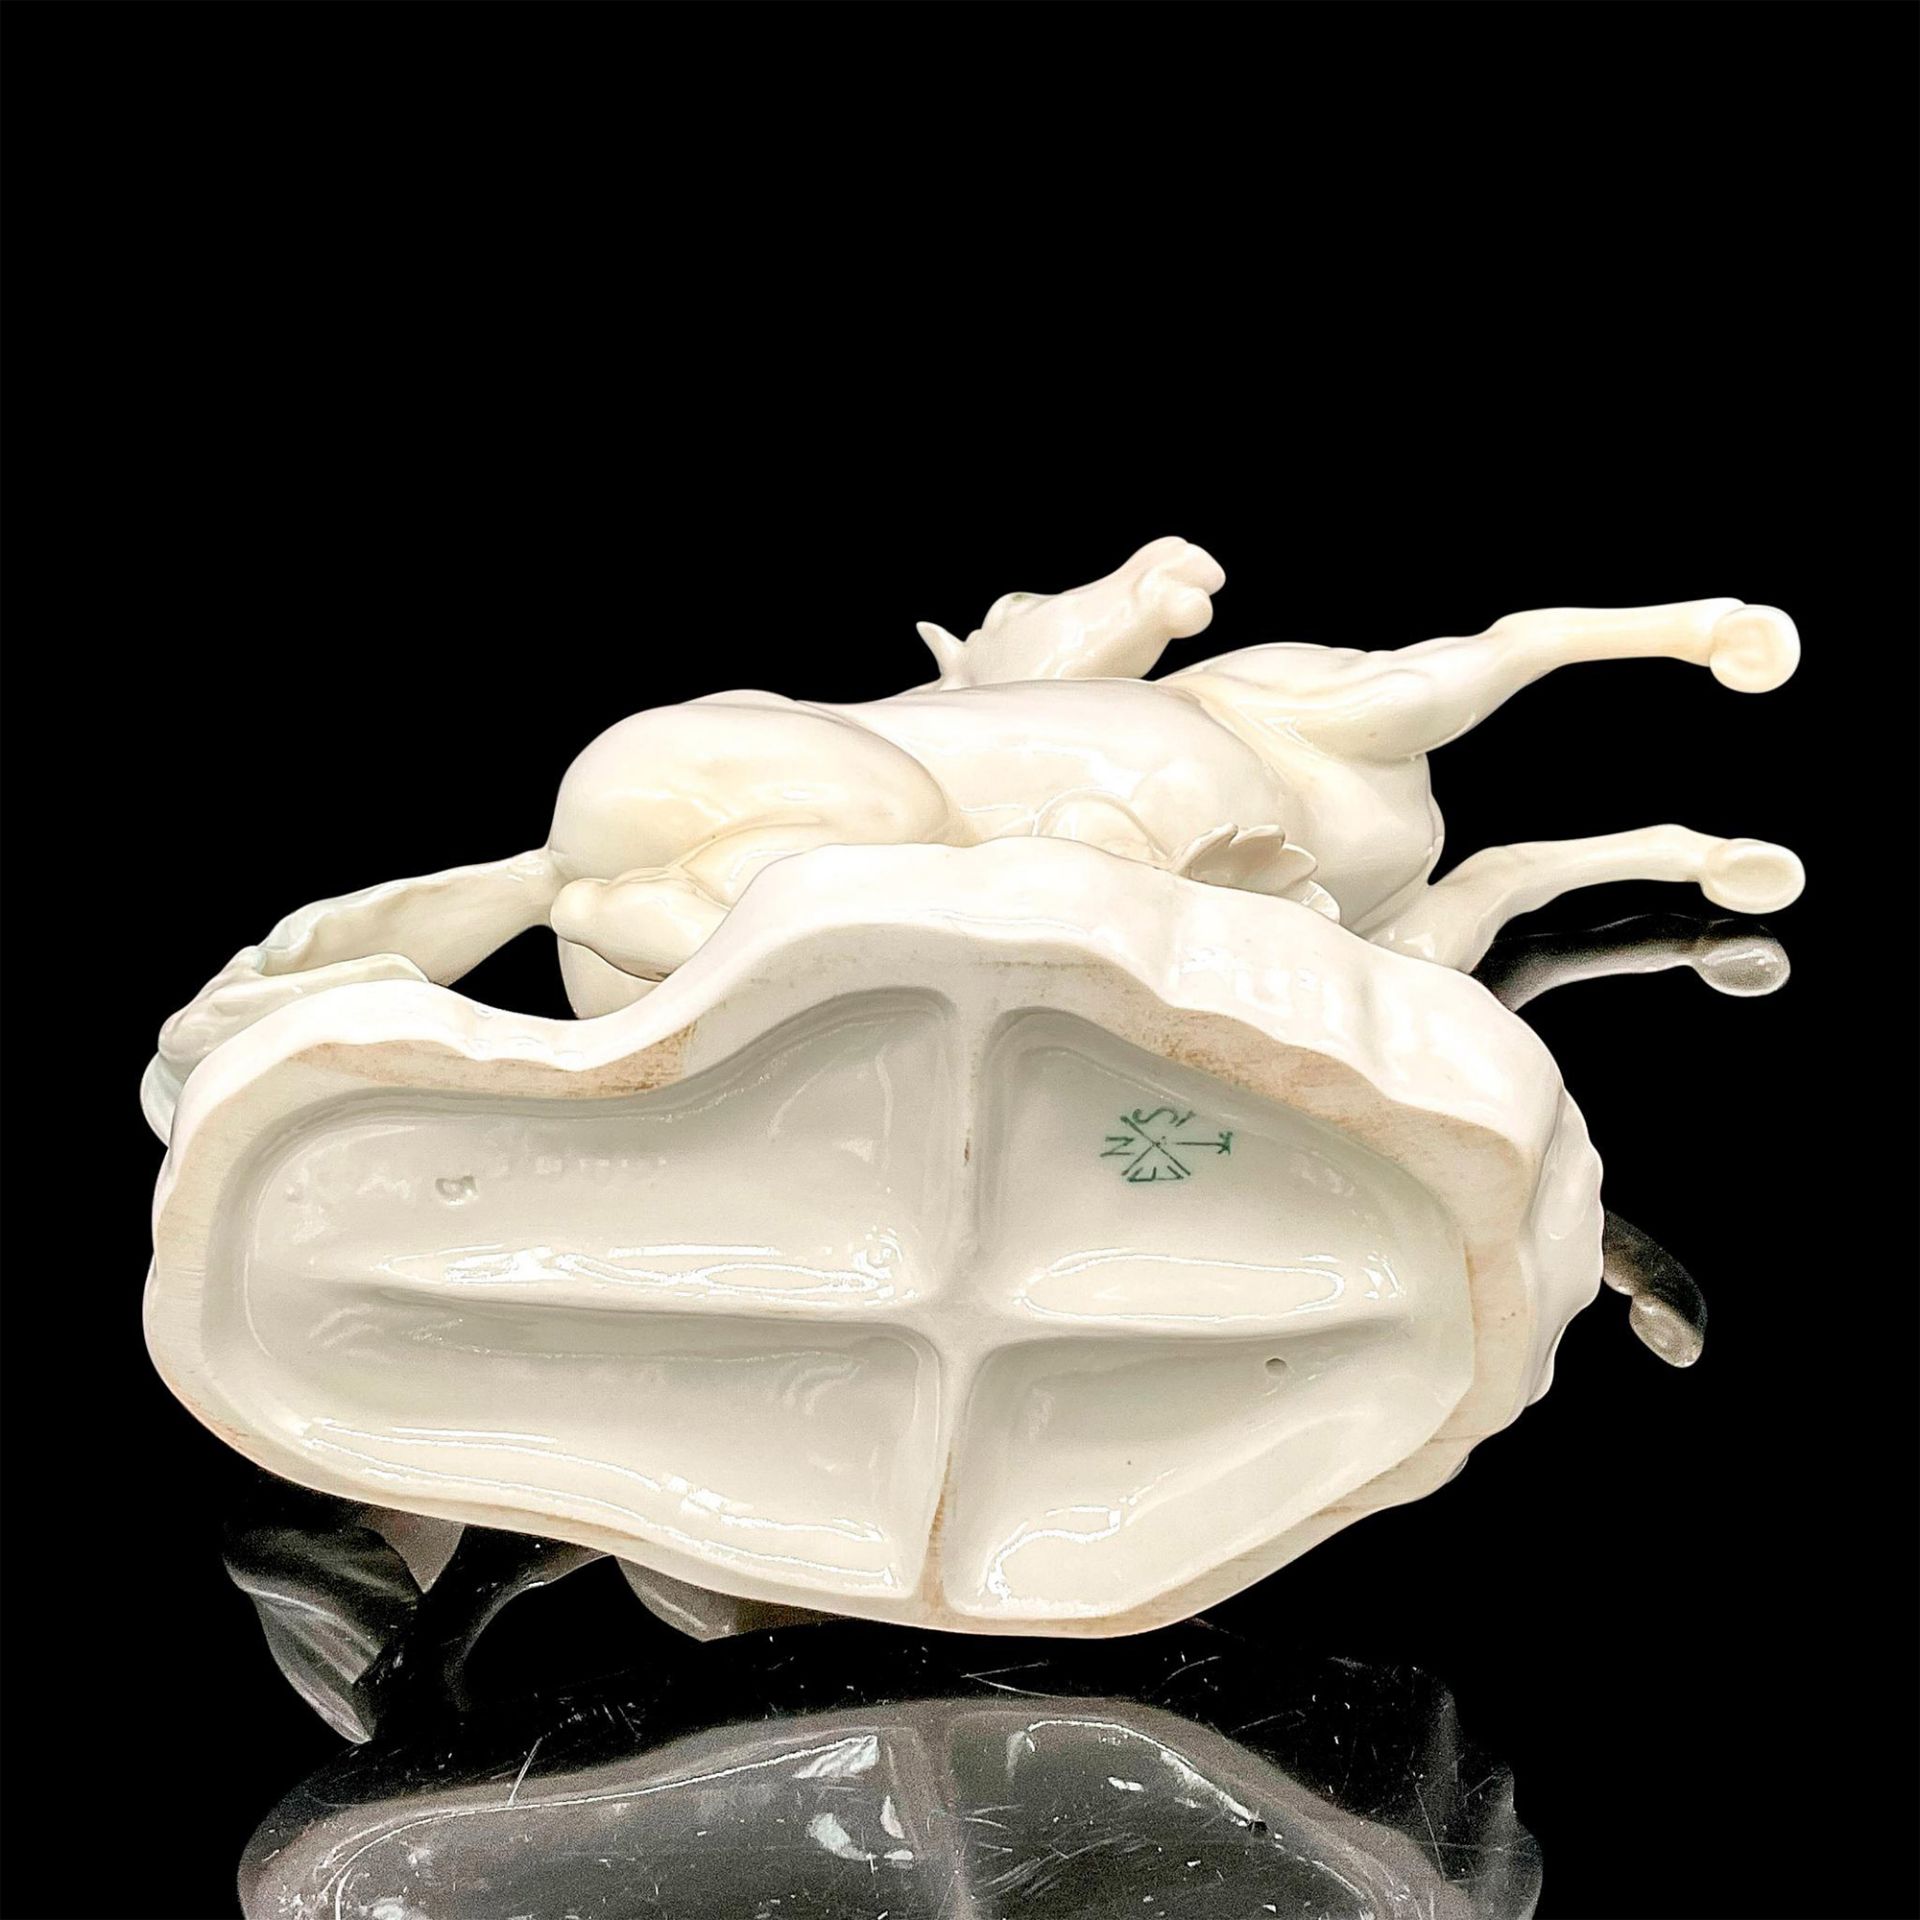 Karl ENS Porcelain Stallion Figurine - Image 3 of 3